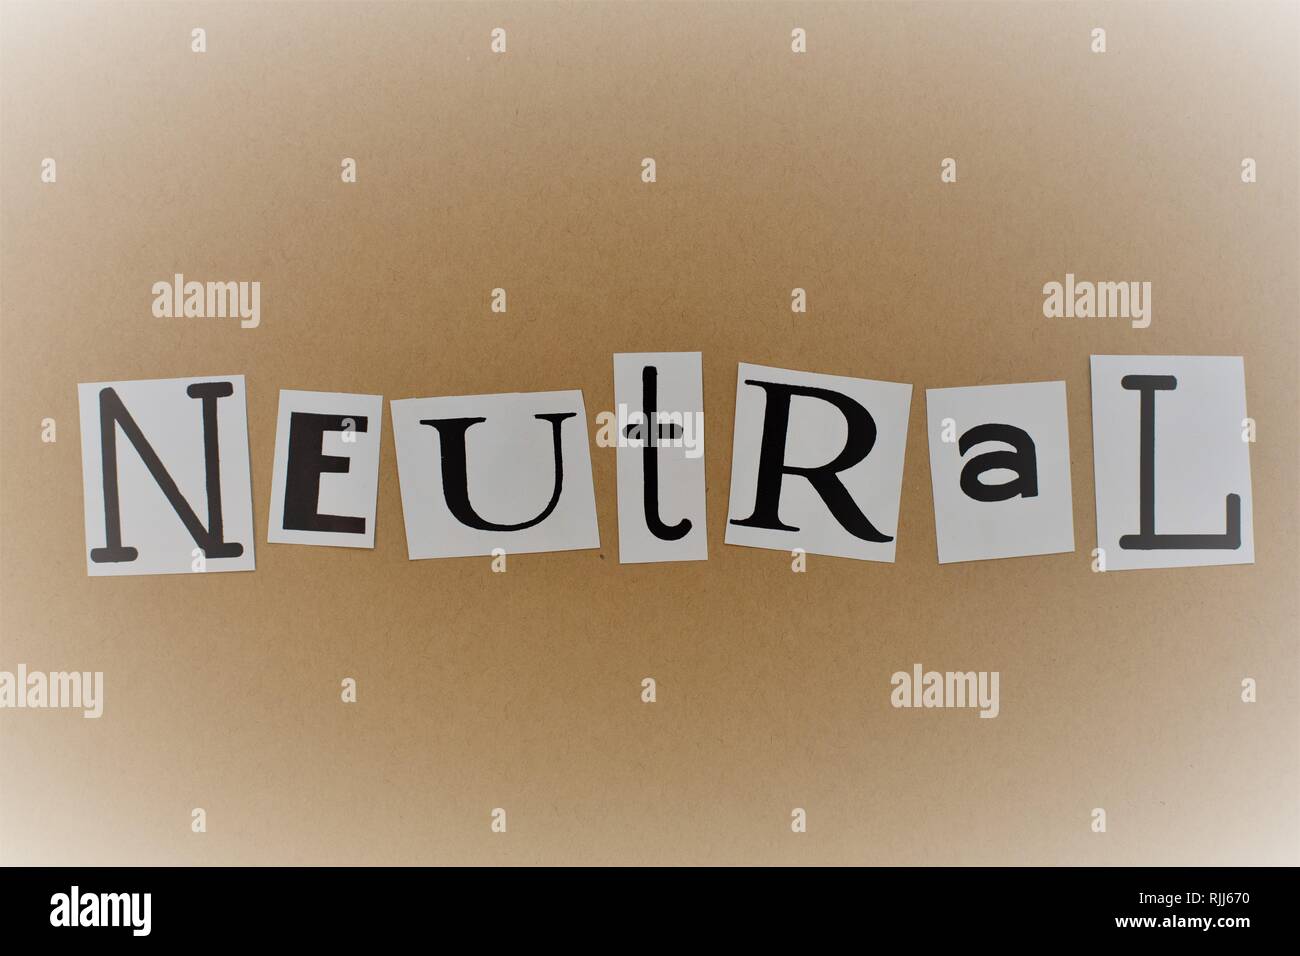 Das Wort "neutral" in Buchstaben ausschneiden geschrieben. Stockfoto